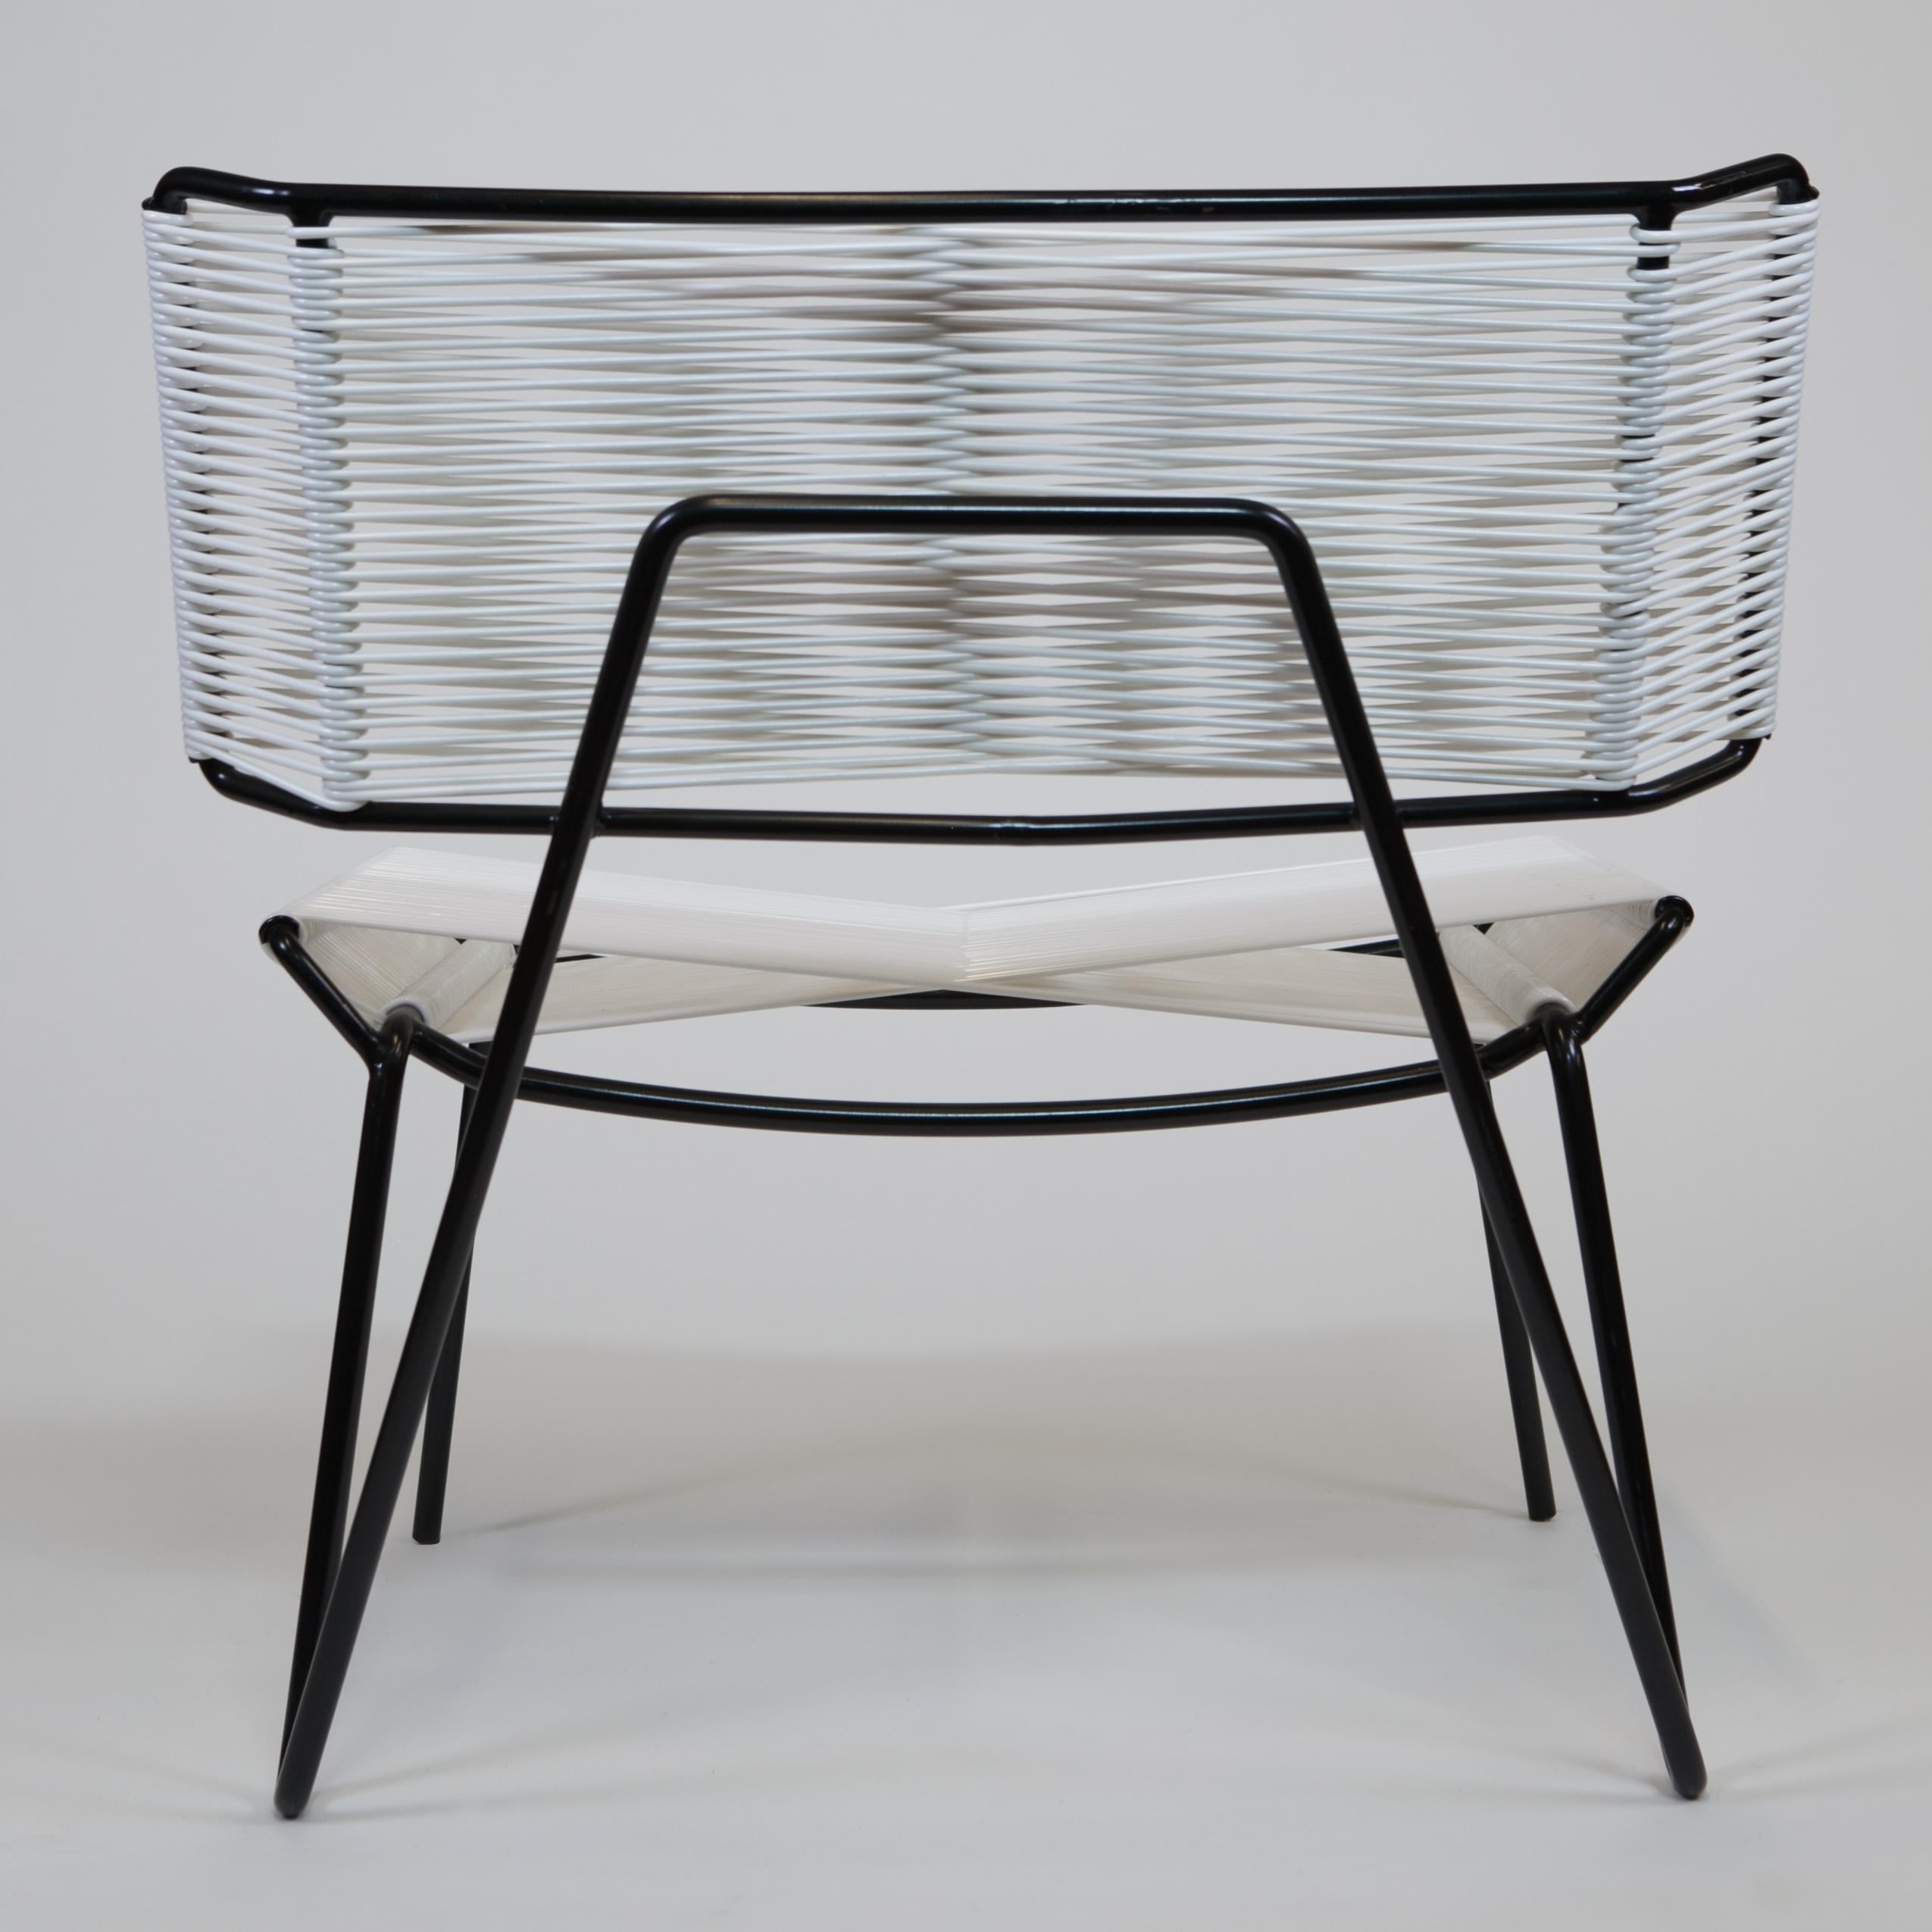 Handgefertigter Midcentury Style Outdoor Lounge Chair:: Schwarz mit weißem PVC:: auf Lager (Stahl)